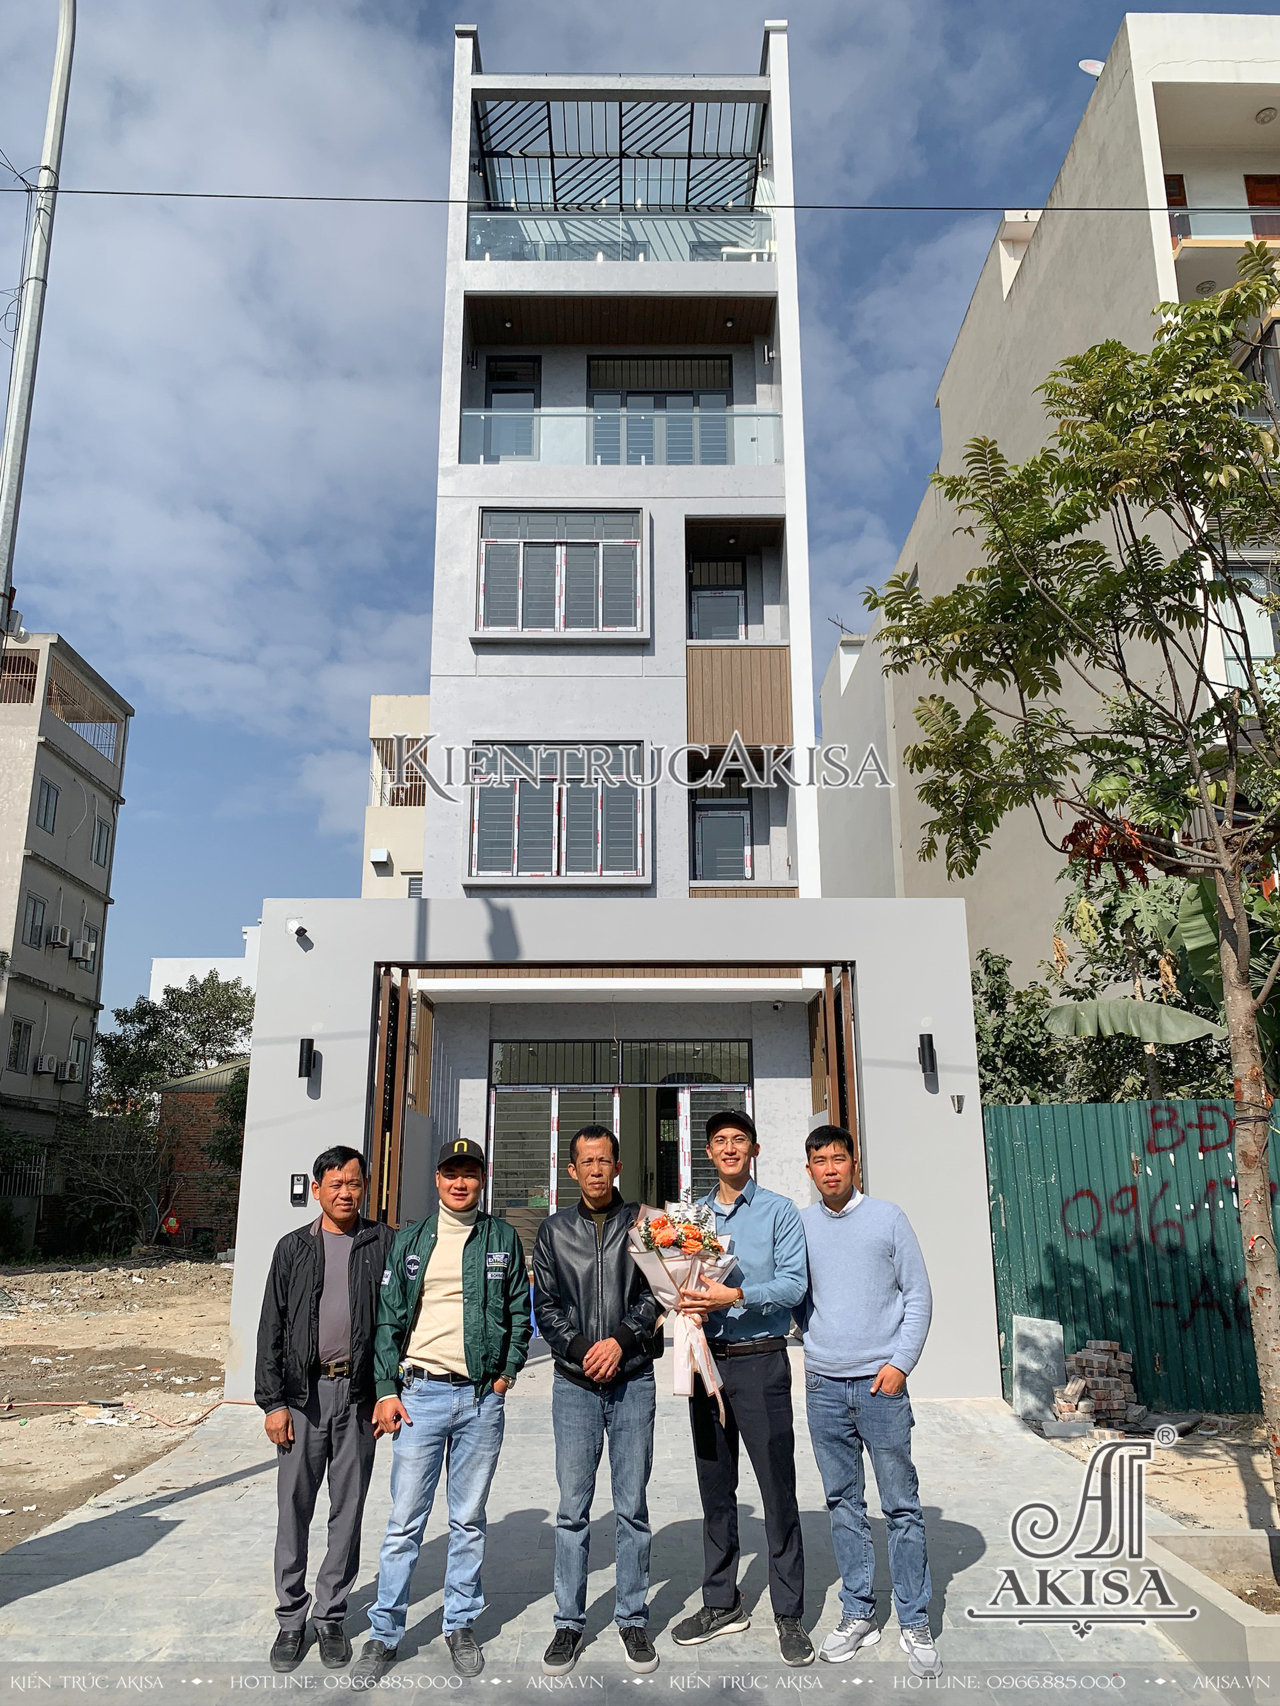 Hoàn thiện thi công nội thất nhà phố hiện đại 5 tầng (CĐT: bà Thúy - Quảng Ninh) HT51872-NT